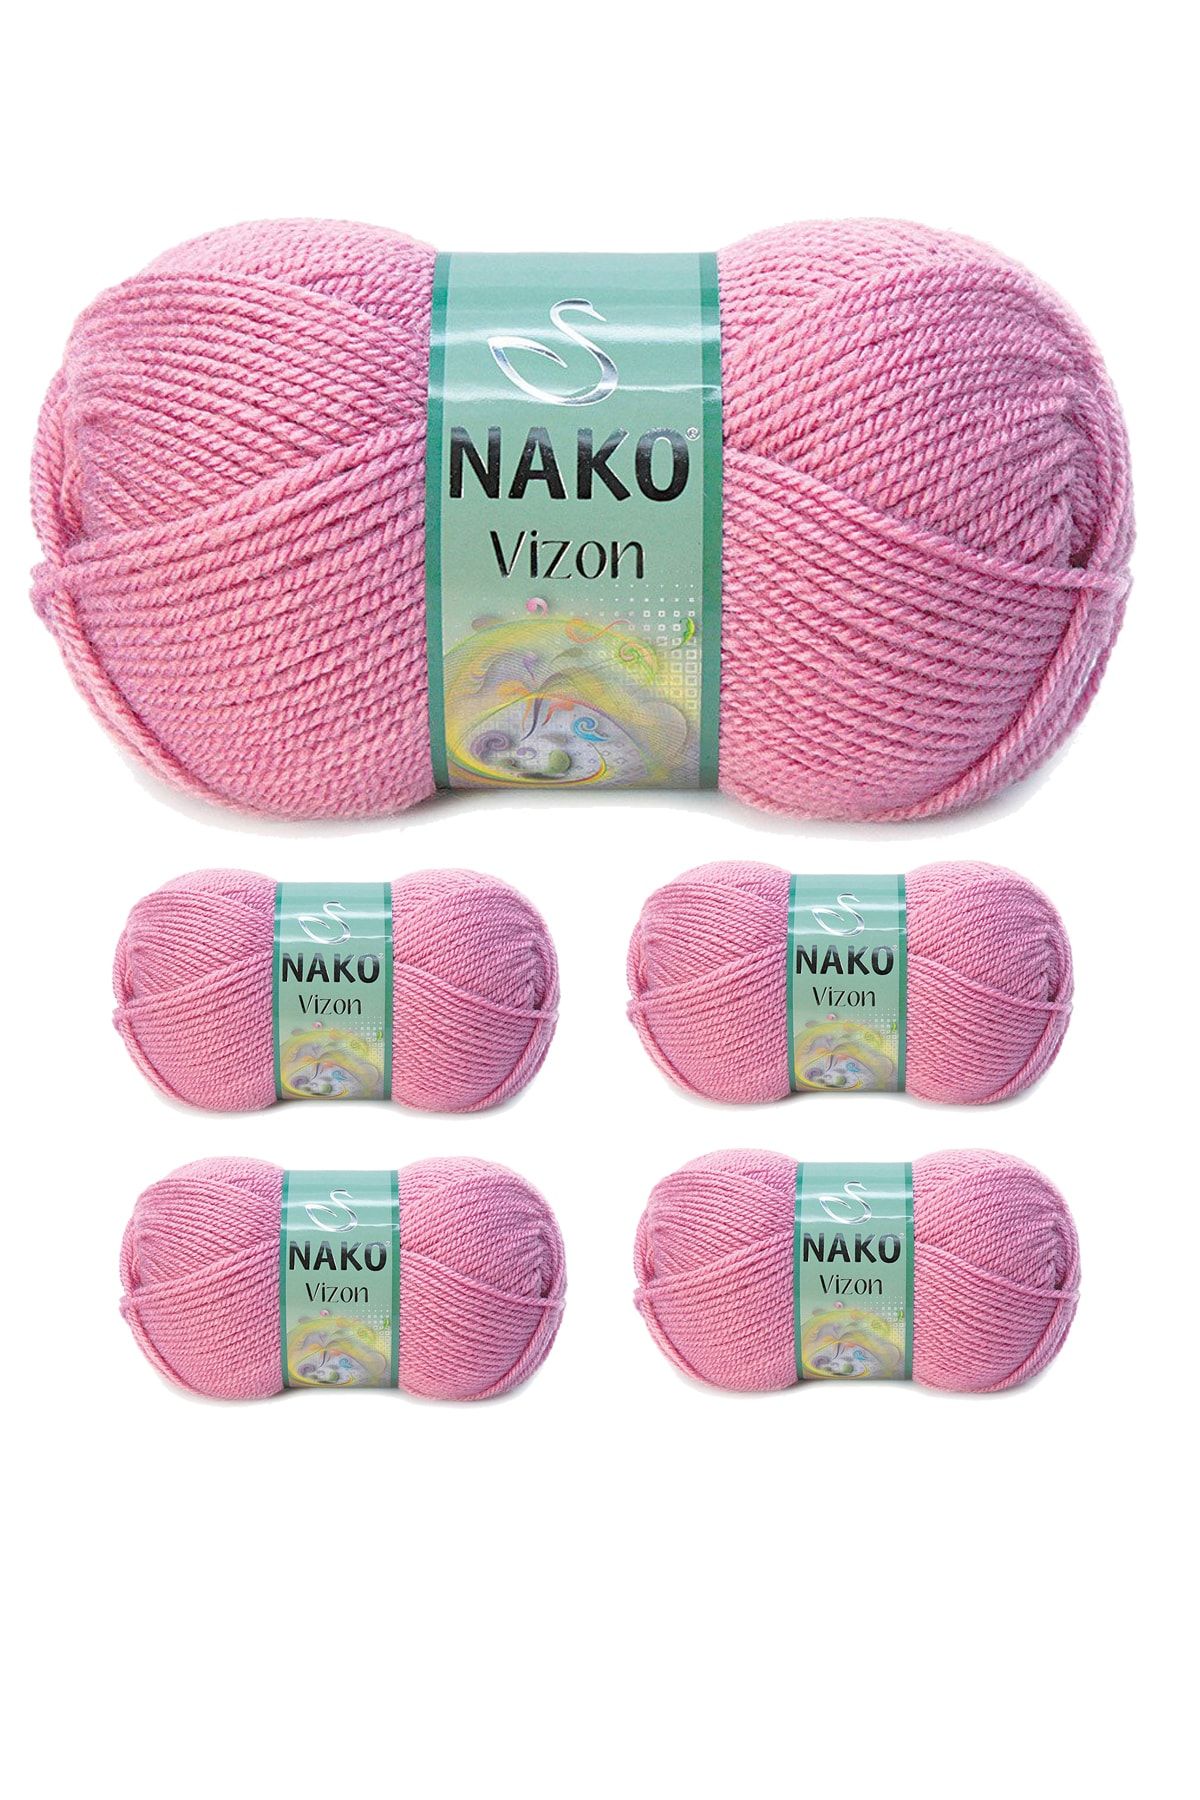 Nako 5 Adet Vizon Premium Akrilik El Örgü Ipi Yünü Renk No:275 Gül Kurusu ( Earphones Kulaklık Hediyeli )